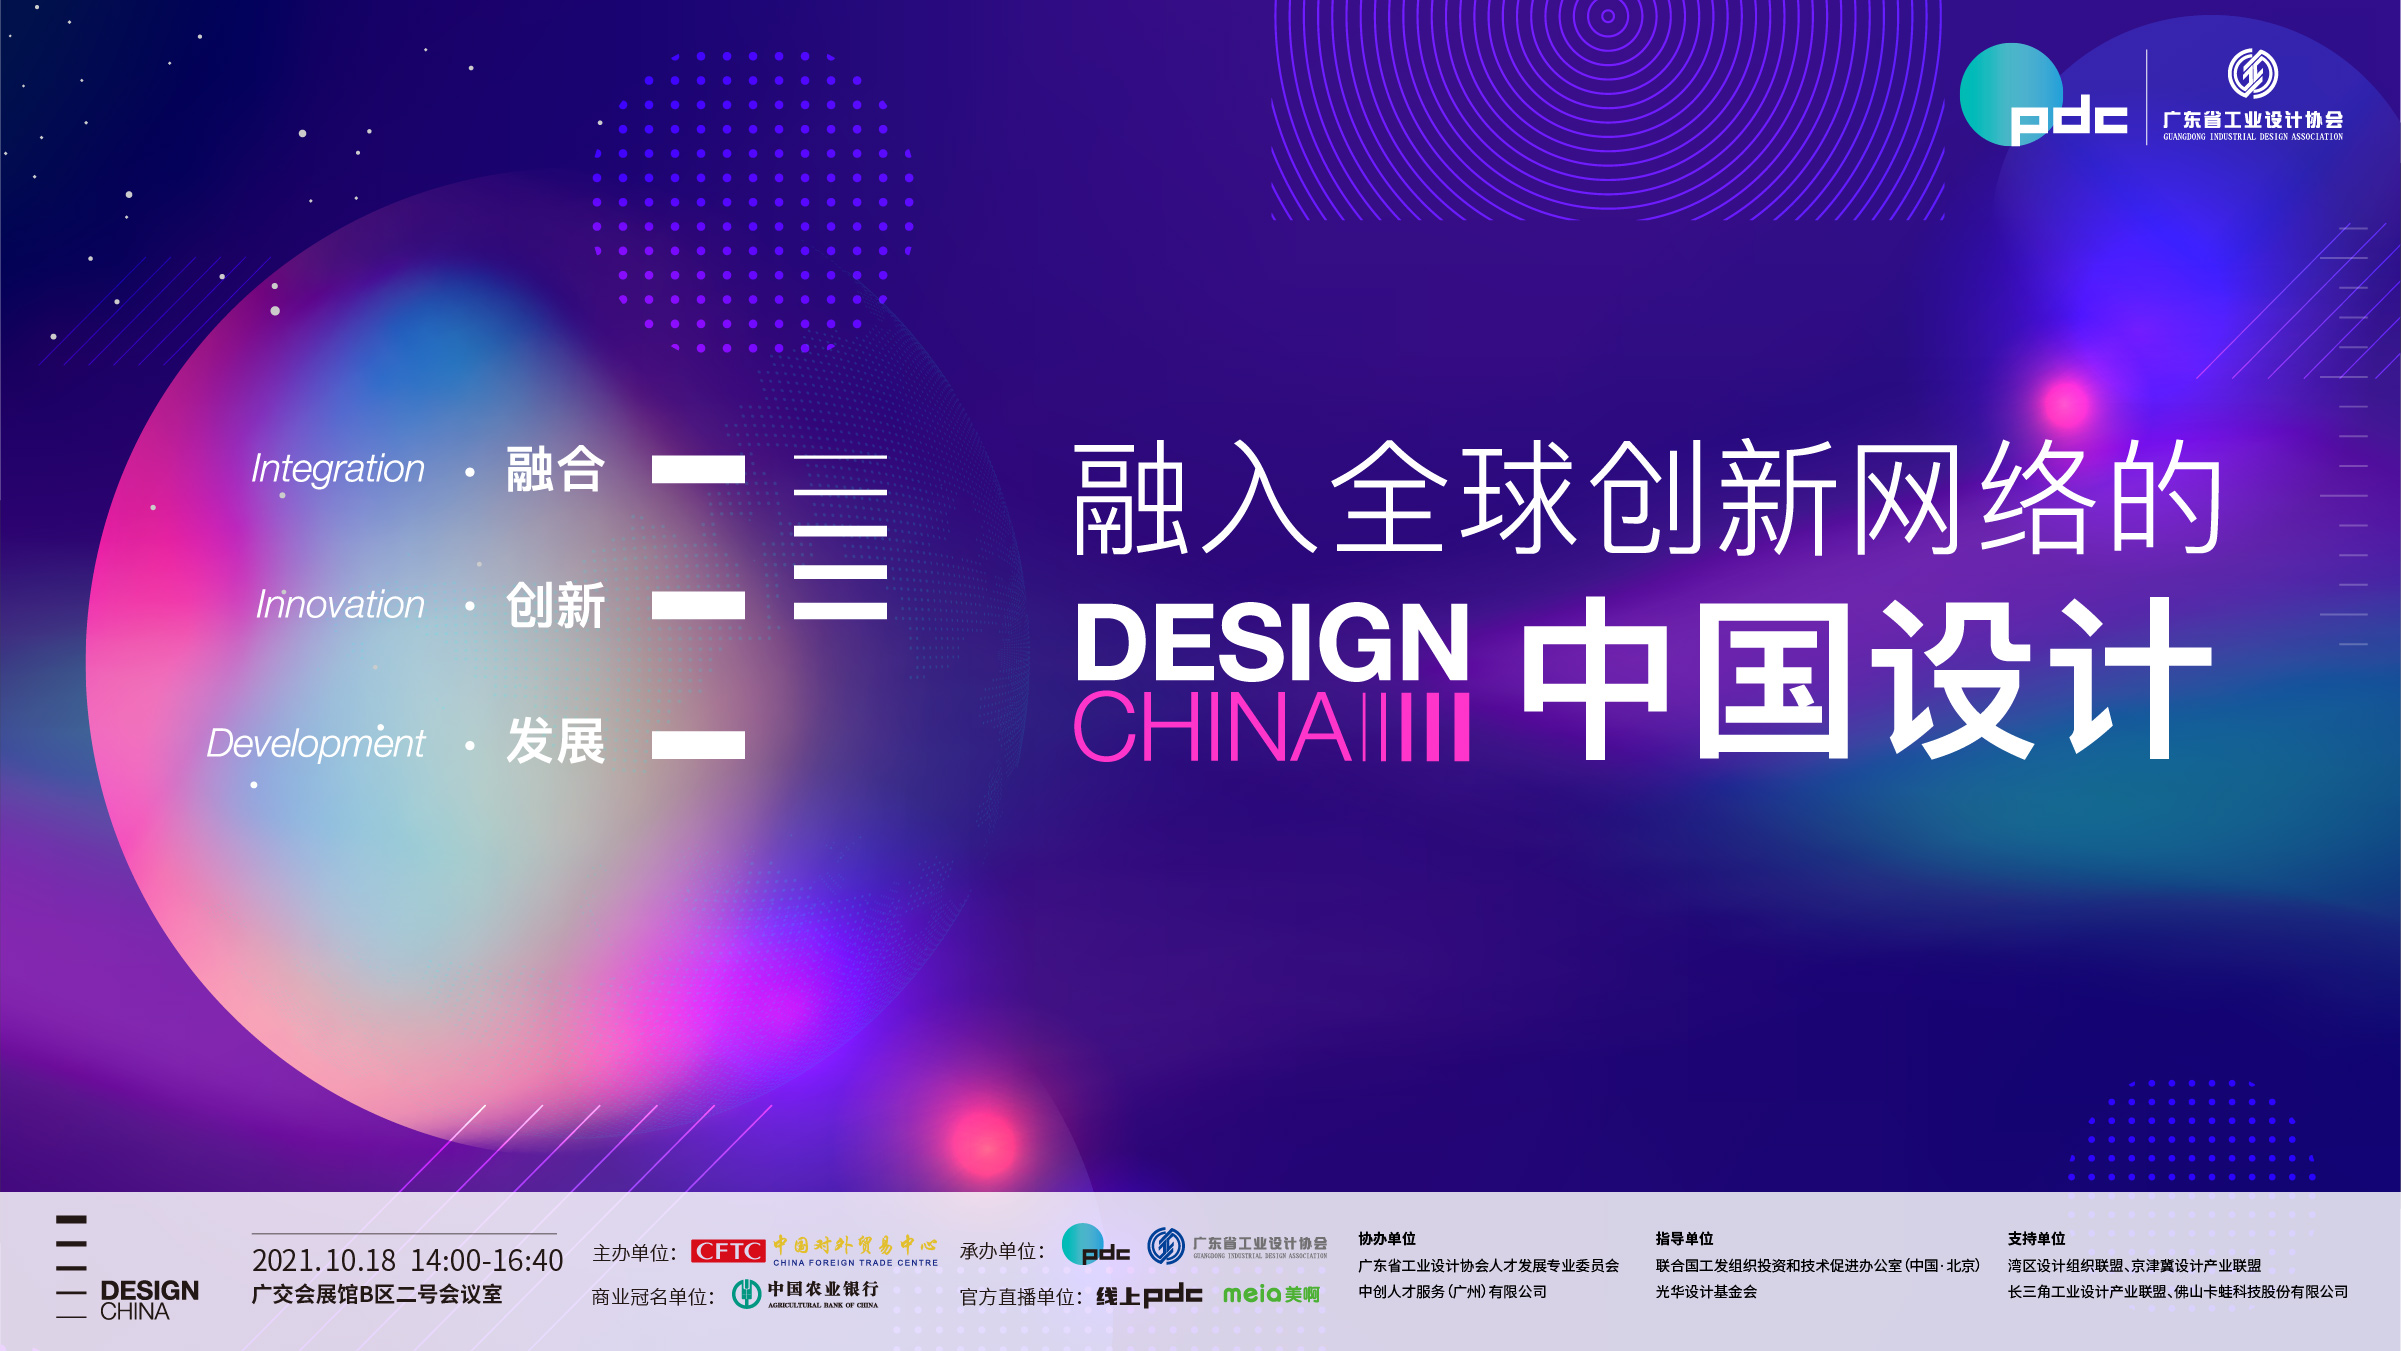 第130届广交会-融入全球创新网络的中国设计